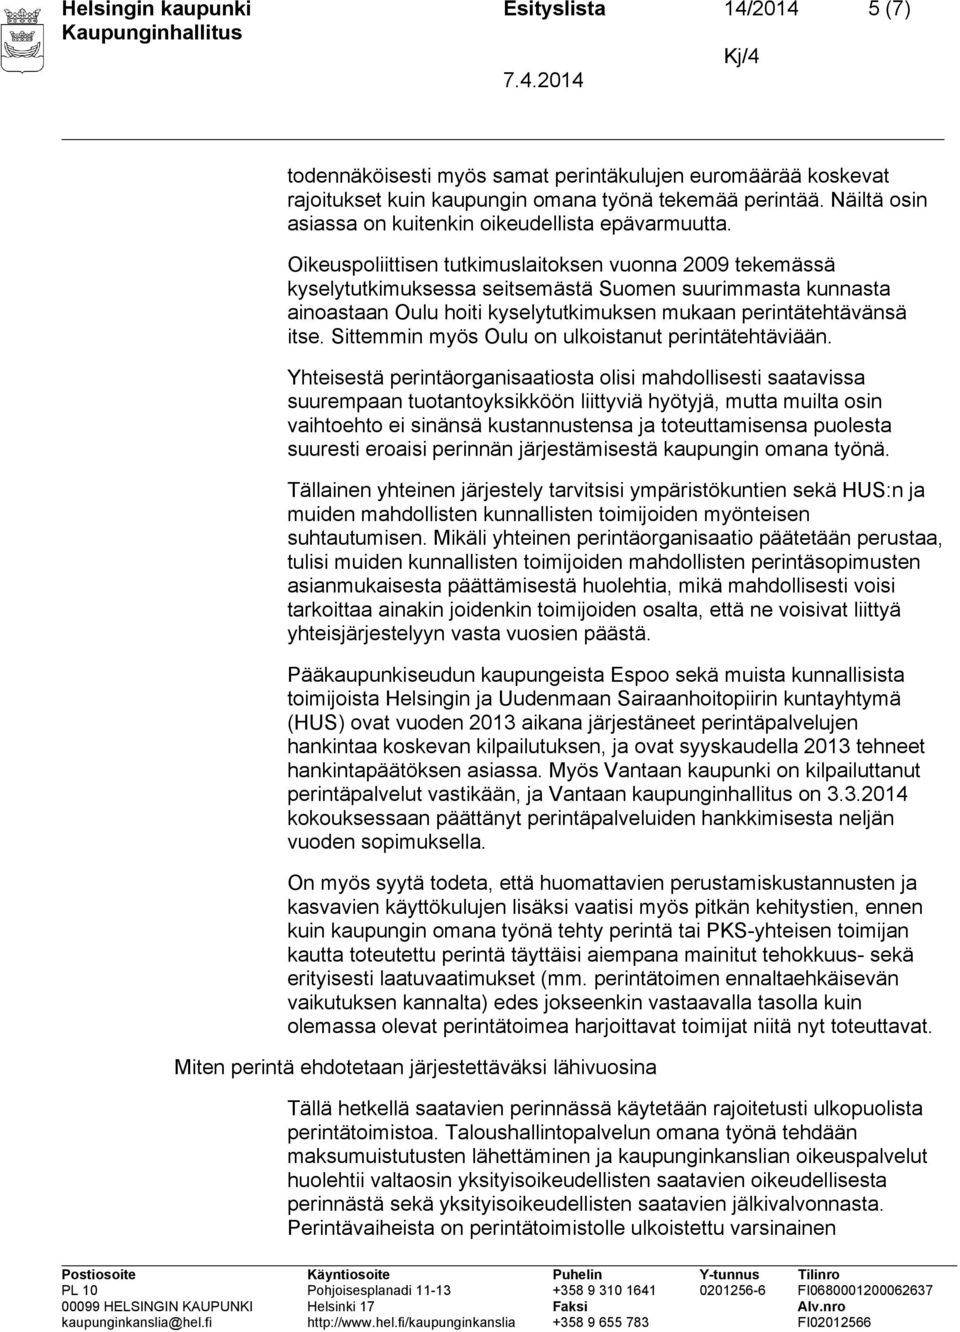 Oikeuspoliittisen tutkimuslaitoksen vuonna 2009 tekemässä kyselytutkimuksessa seitsemästä Suomen suurimmasta kunnasta ainoastaan Oulu hoiti kyselytutkimuksen mukaan perintätehtävänsä itse.